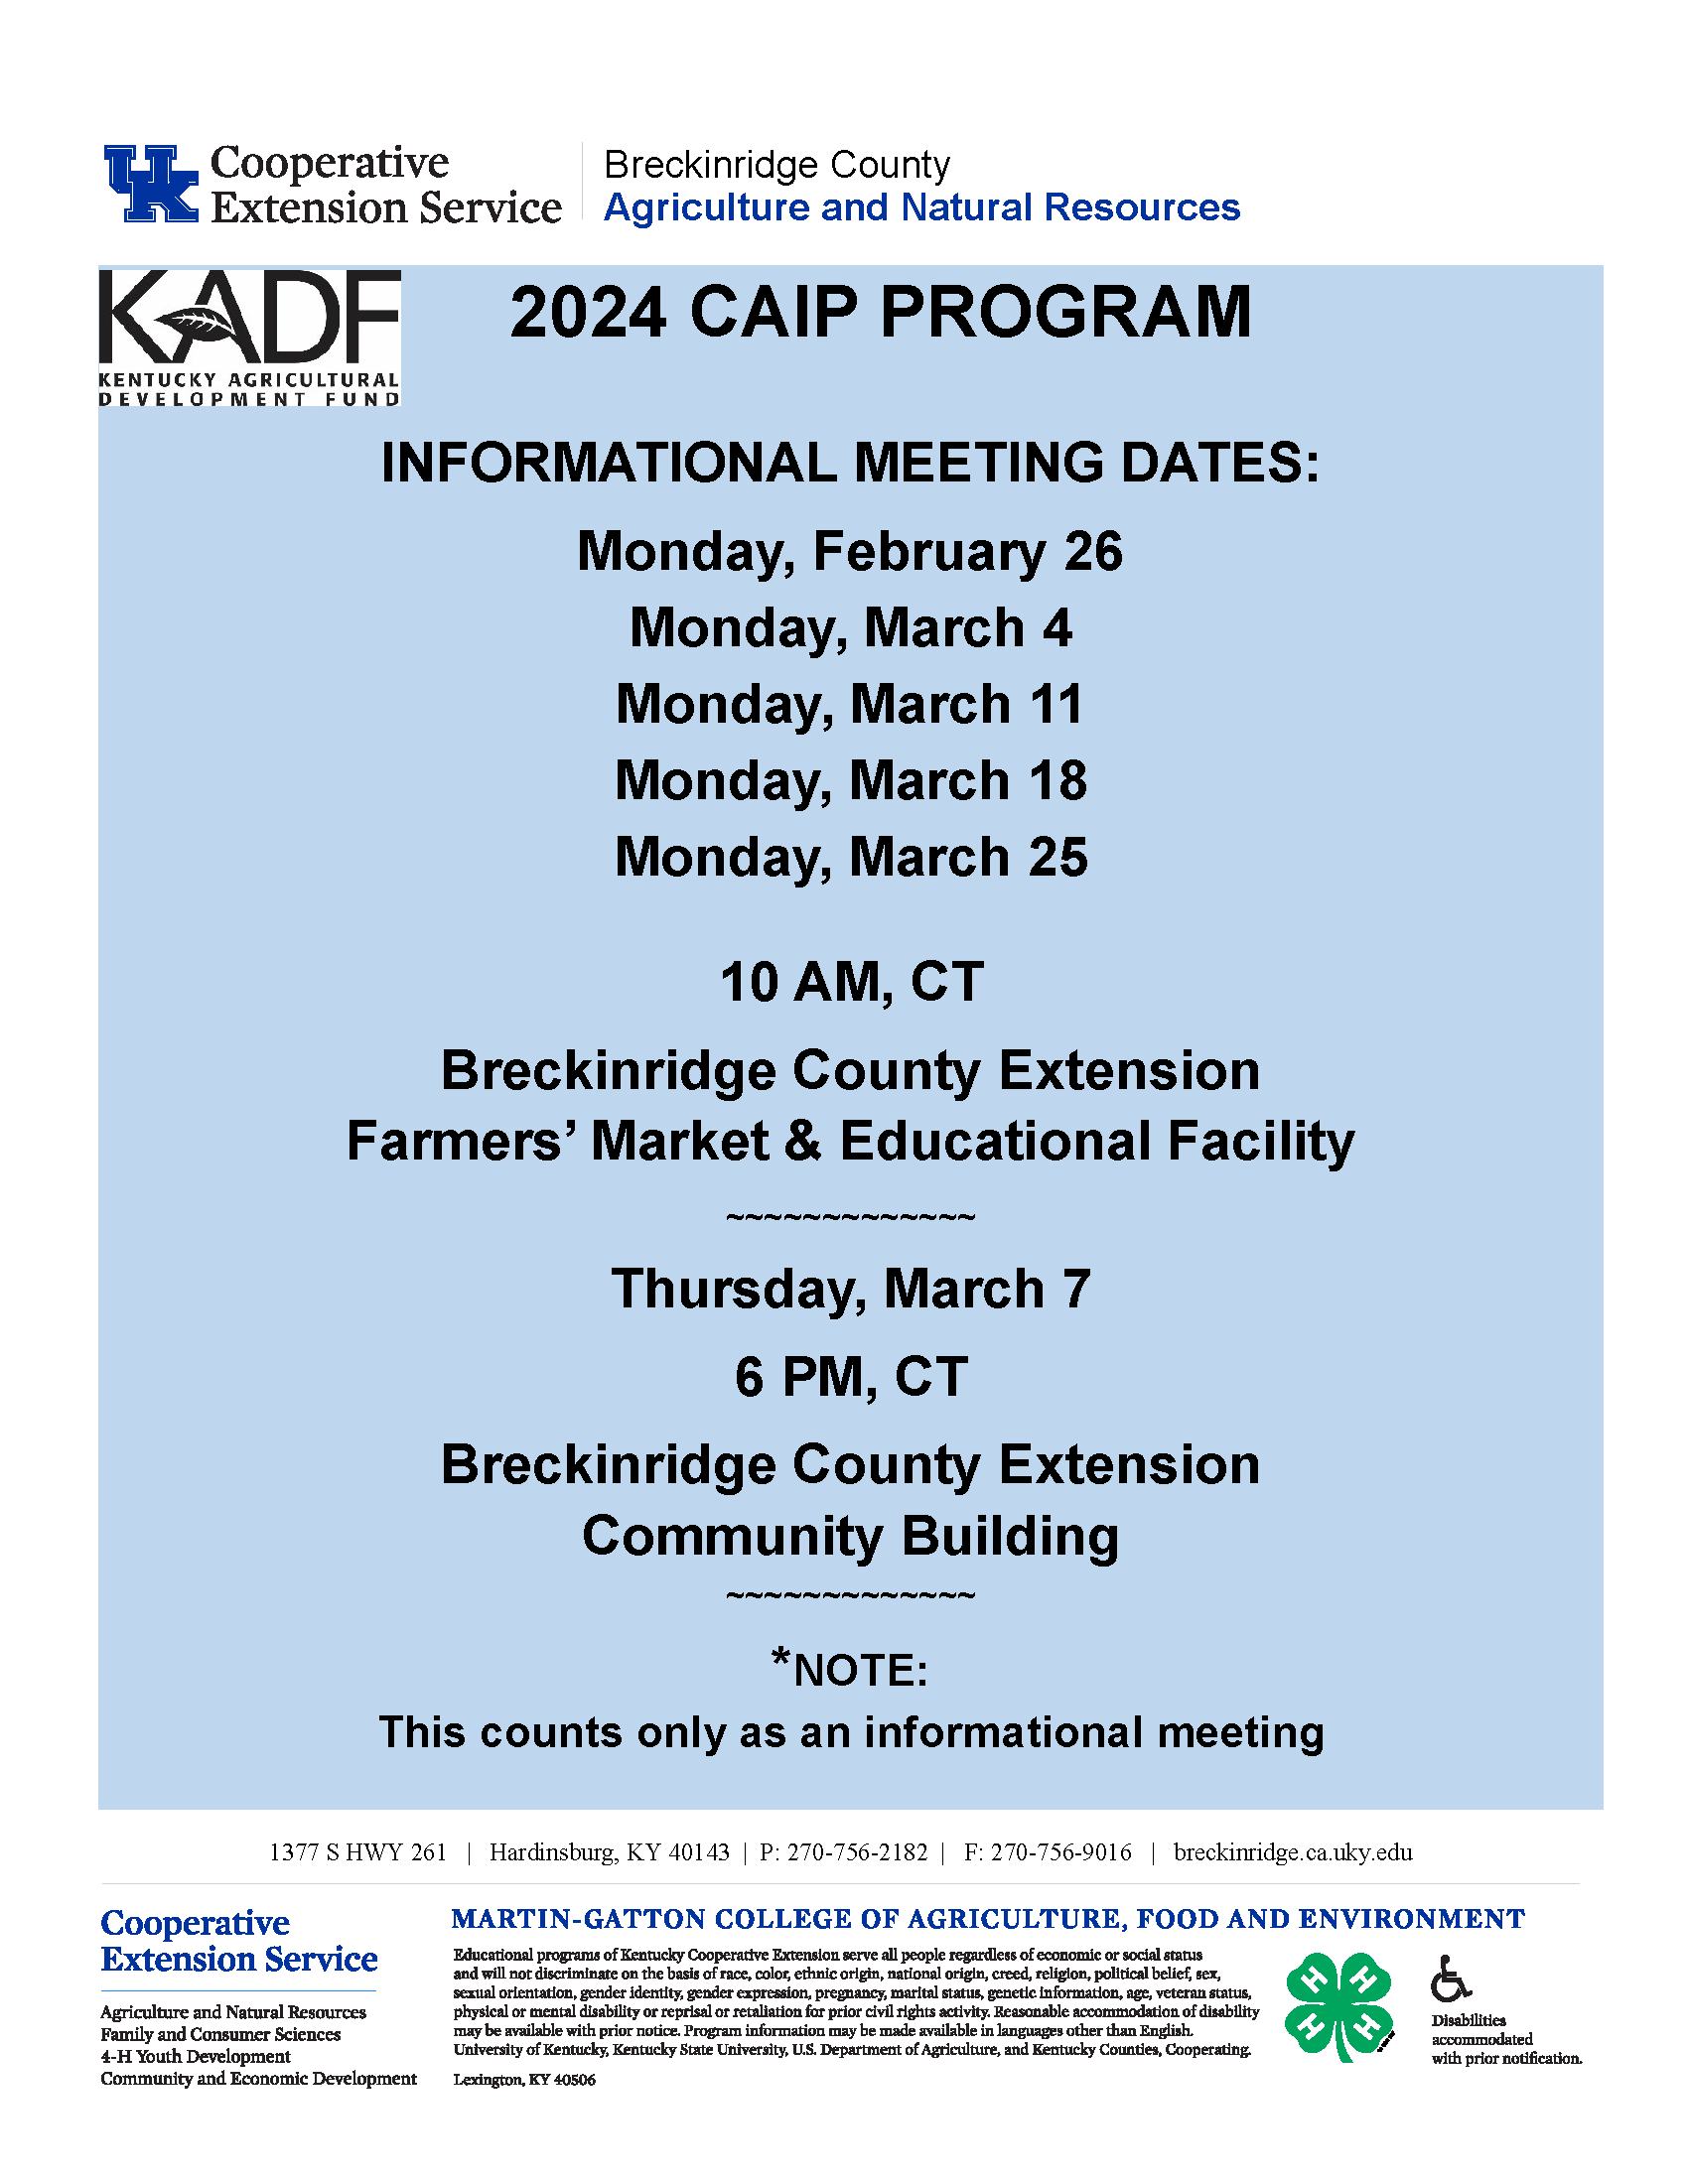 CAIP Informational Meetings